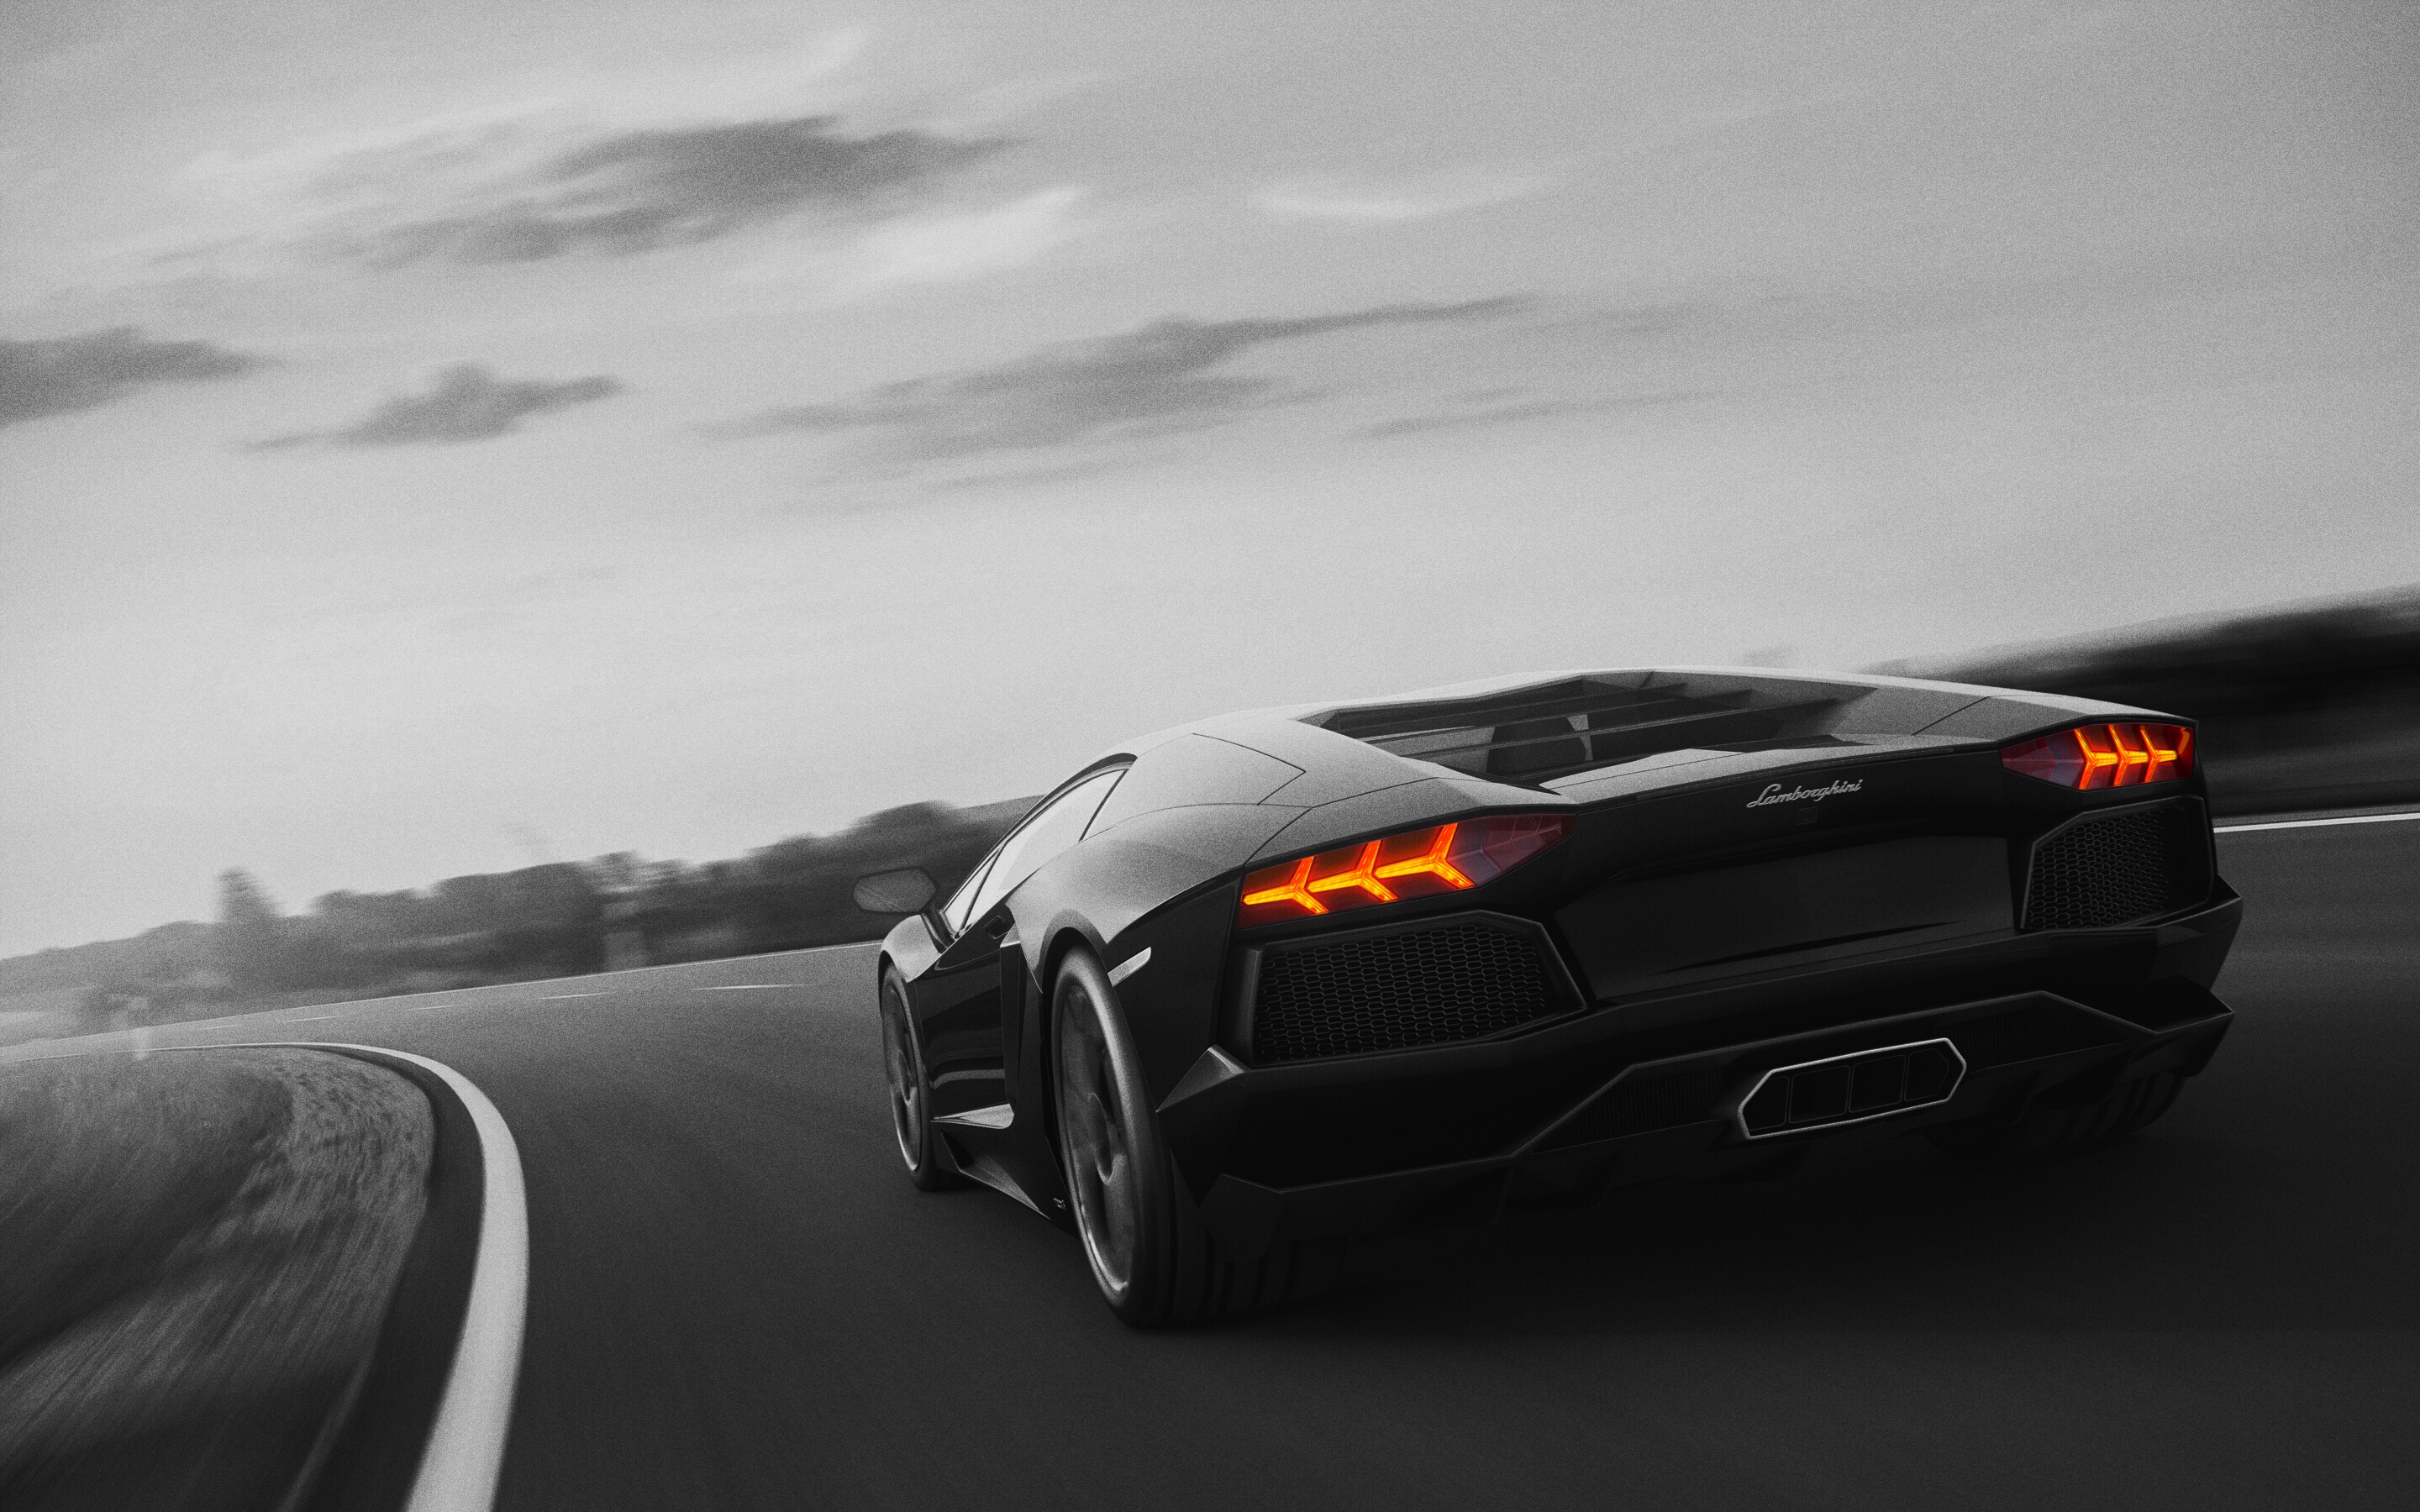 General 2880x1800 Lamborghini monochrome car vehicle supercars sports car asphalt black cars Lamborghini Aventador